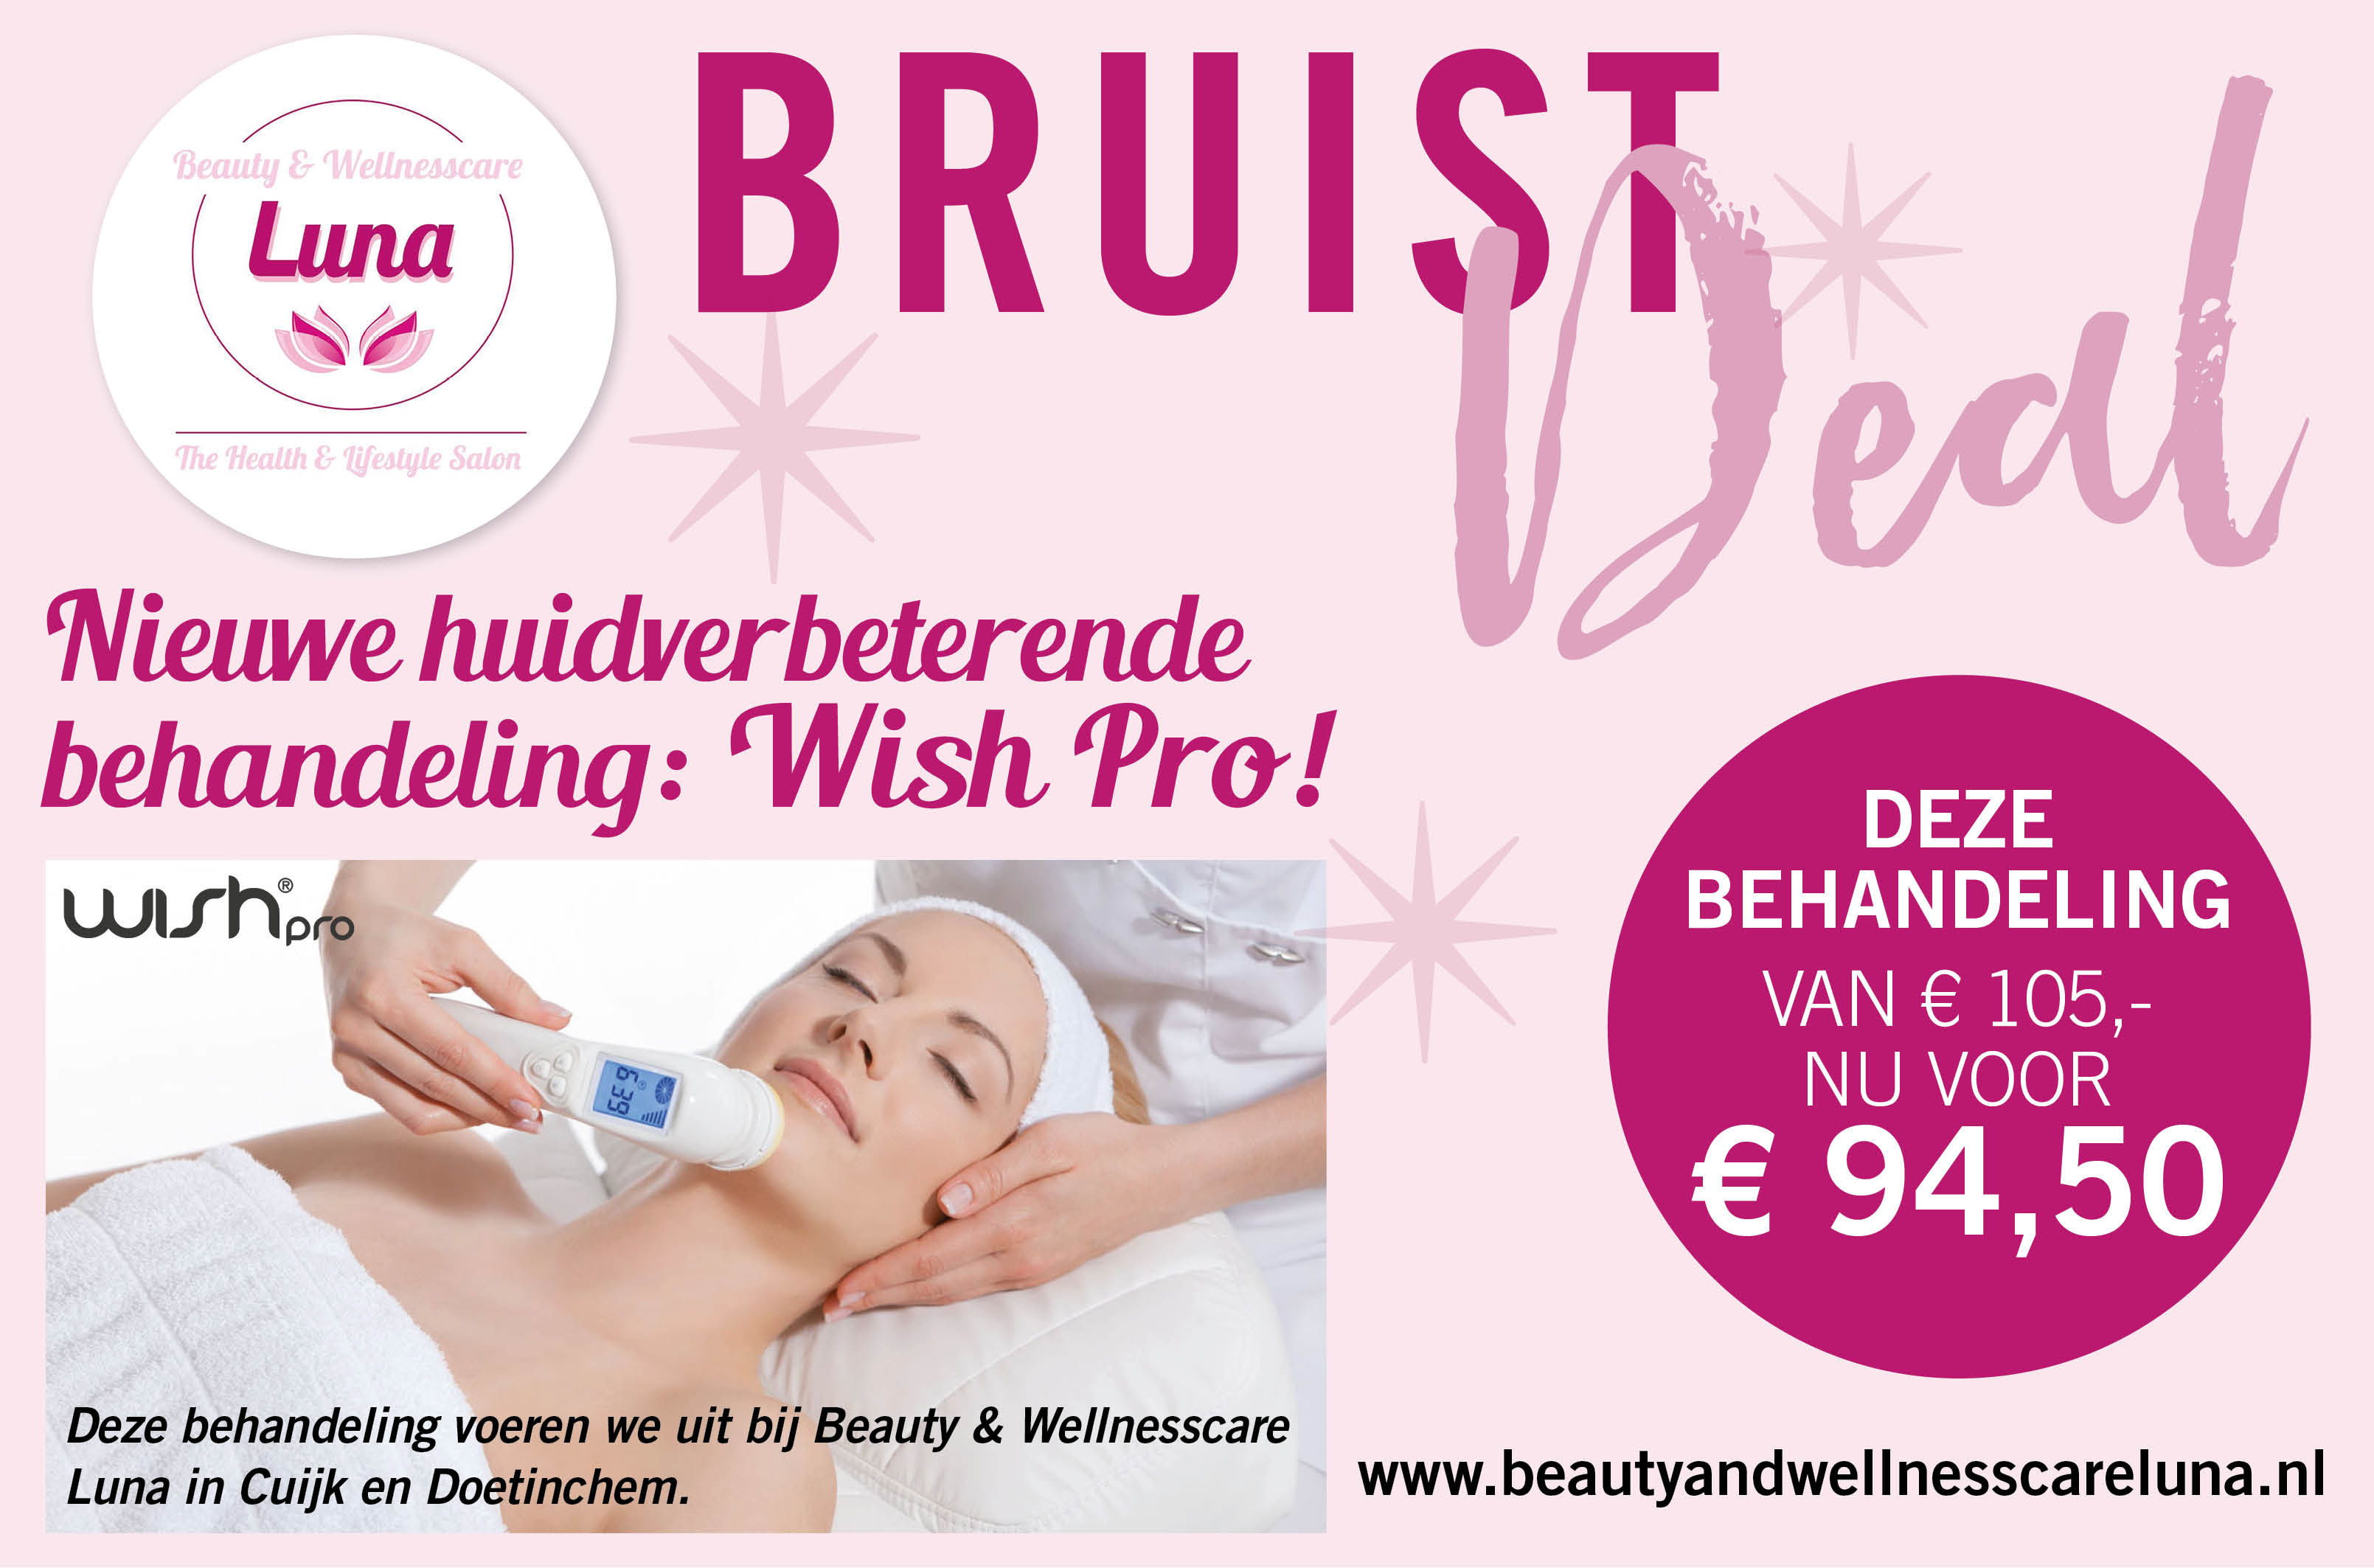 Nieuwe huidverbeterende behandeling Wish Pro van € 105,- voor € 94,50 met deze Bruist Deal